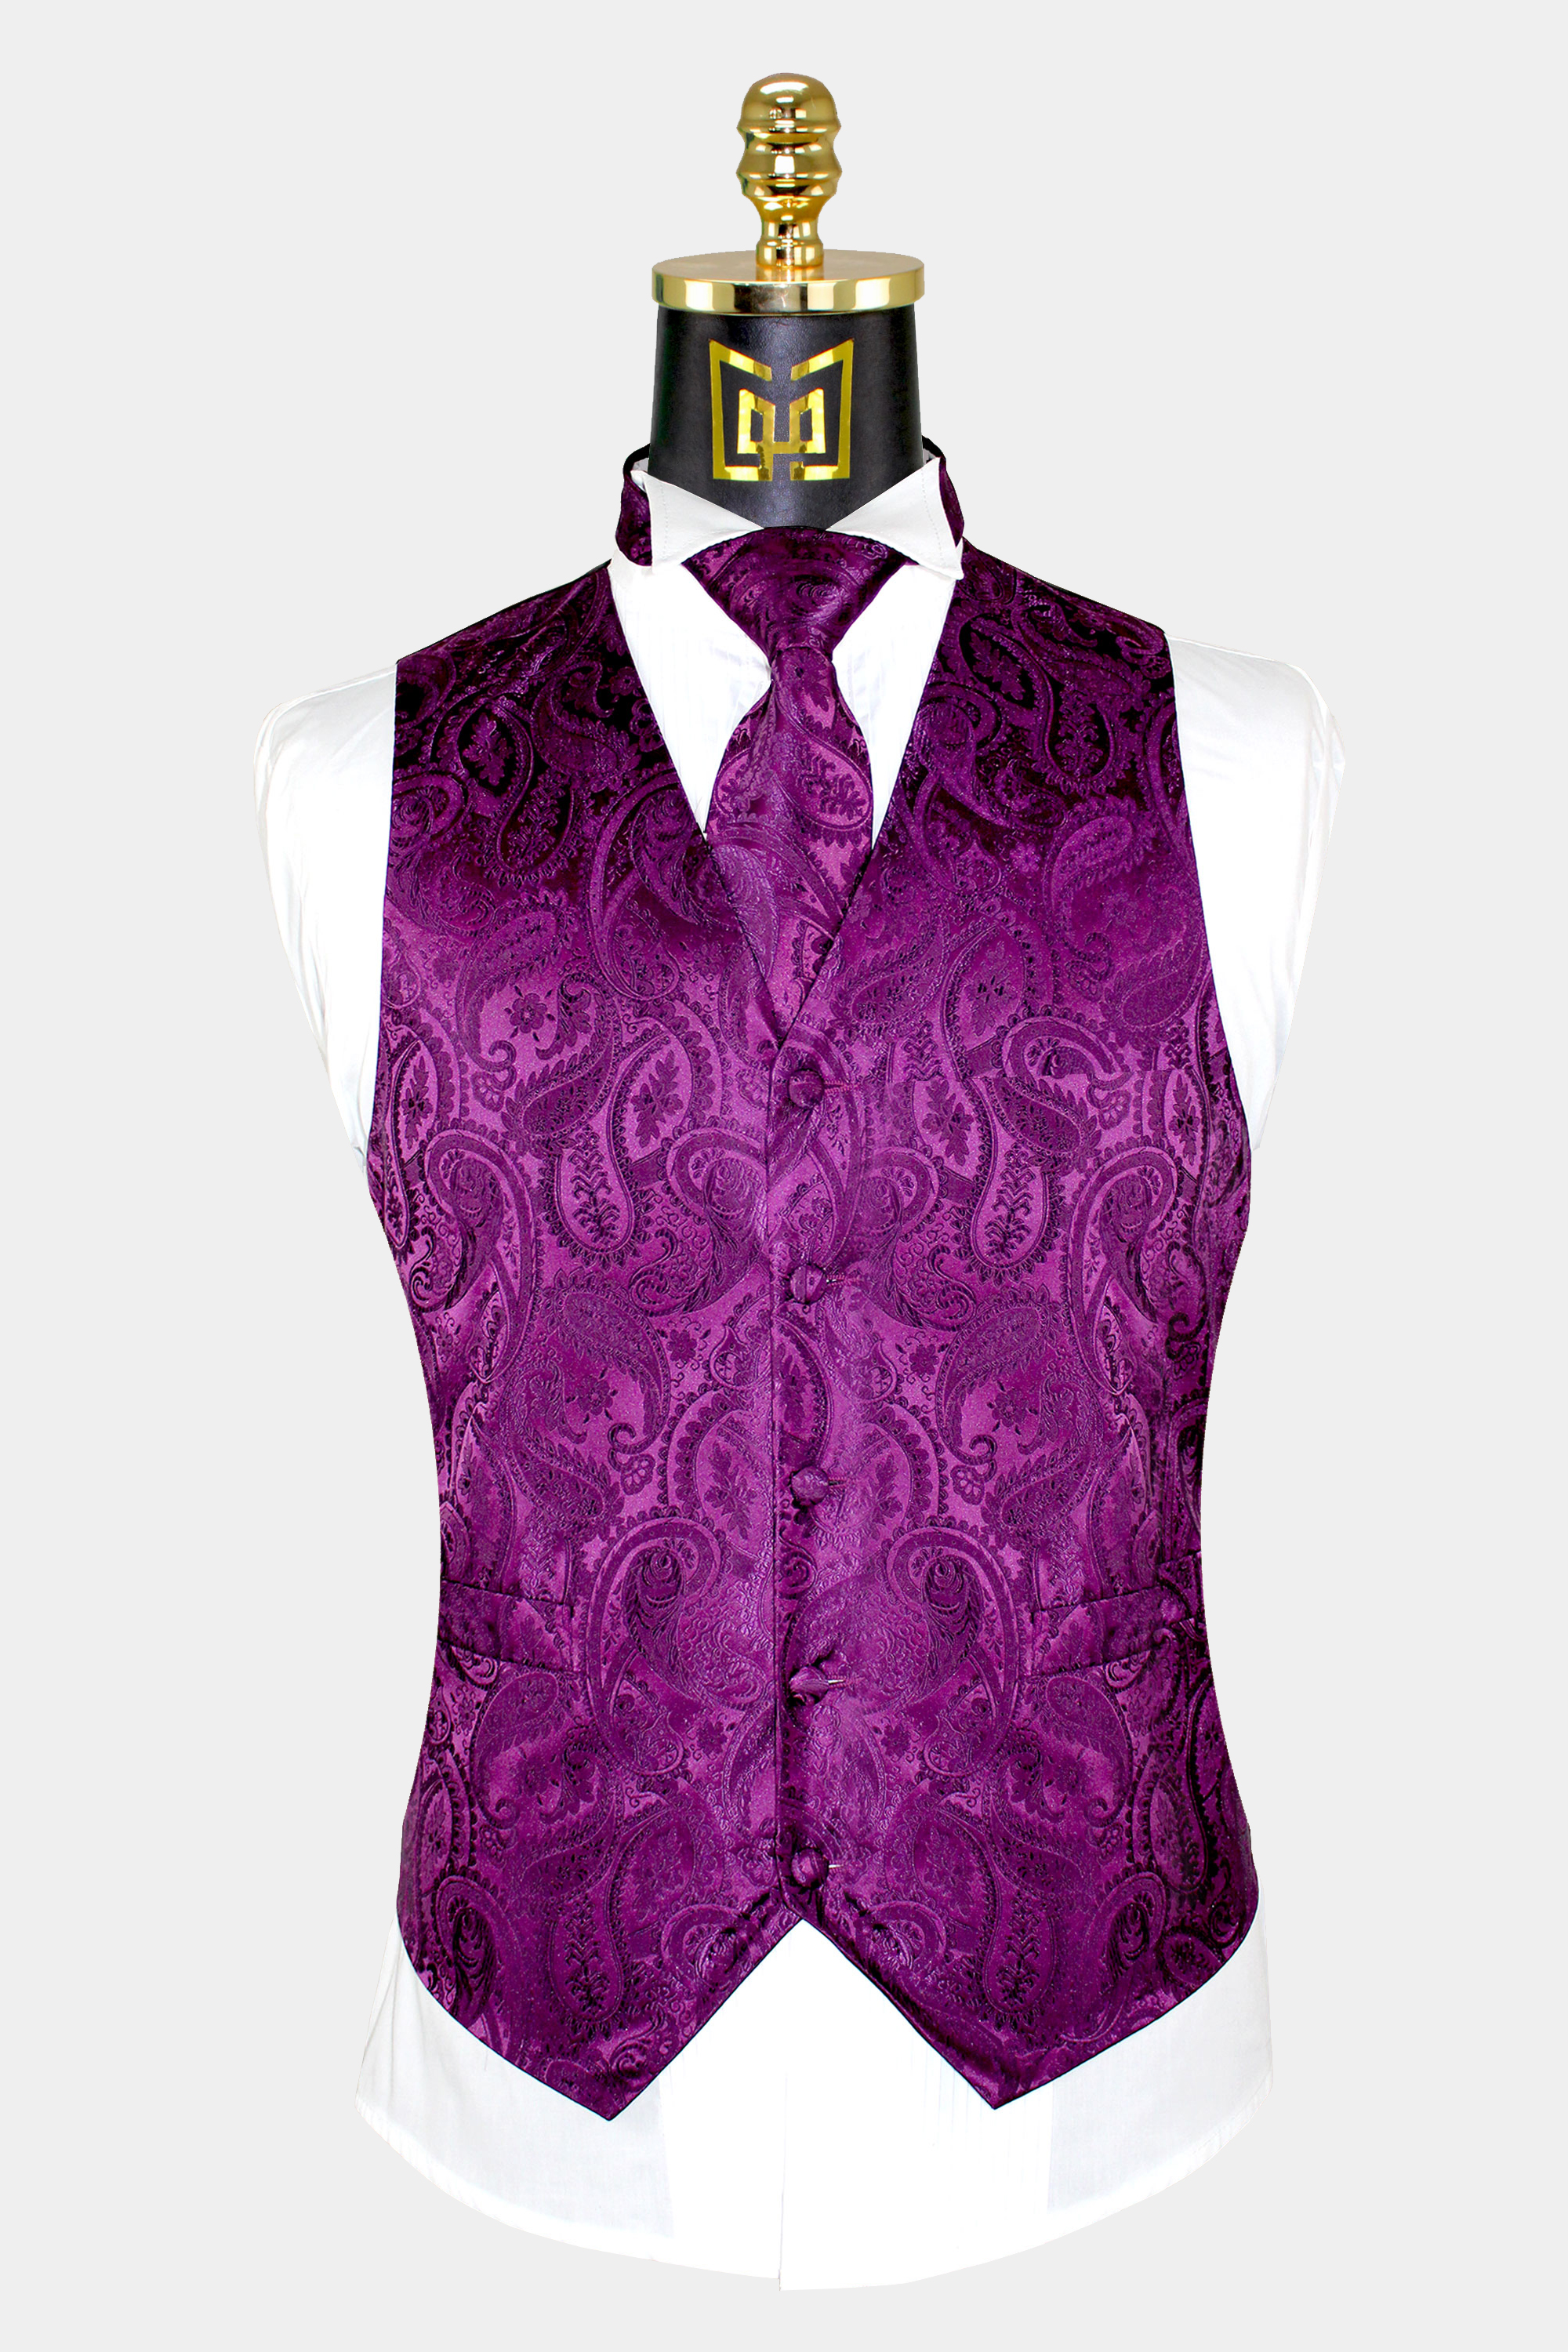 Magenta-Purple-Vest-and-Tie-Set-Wedding-Groom-Tuxedo-Vest-WAistcoat-from-Gentlemansguru.com_